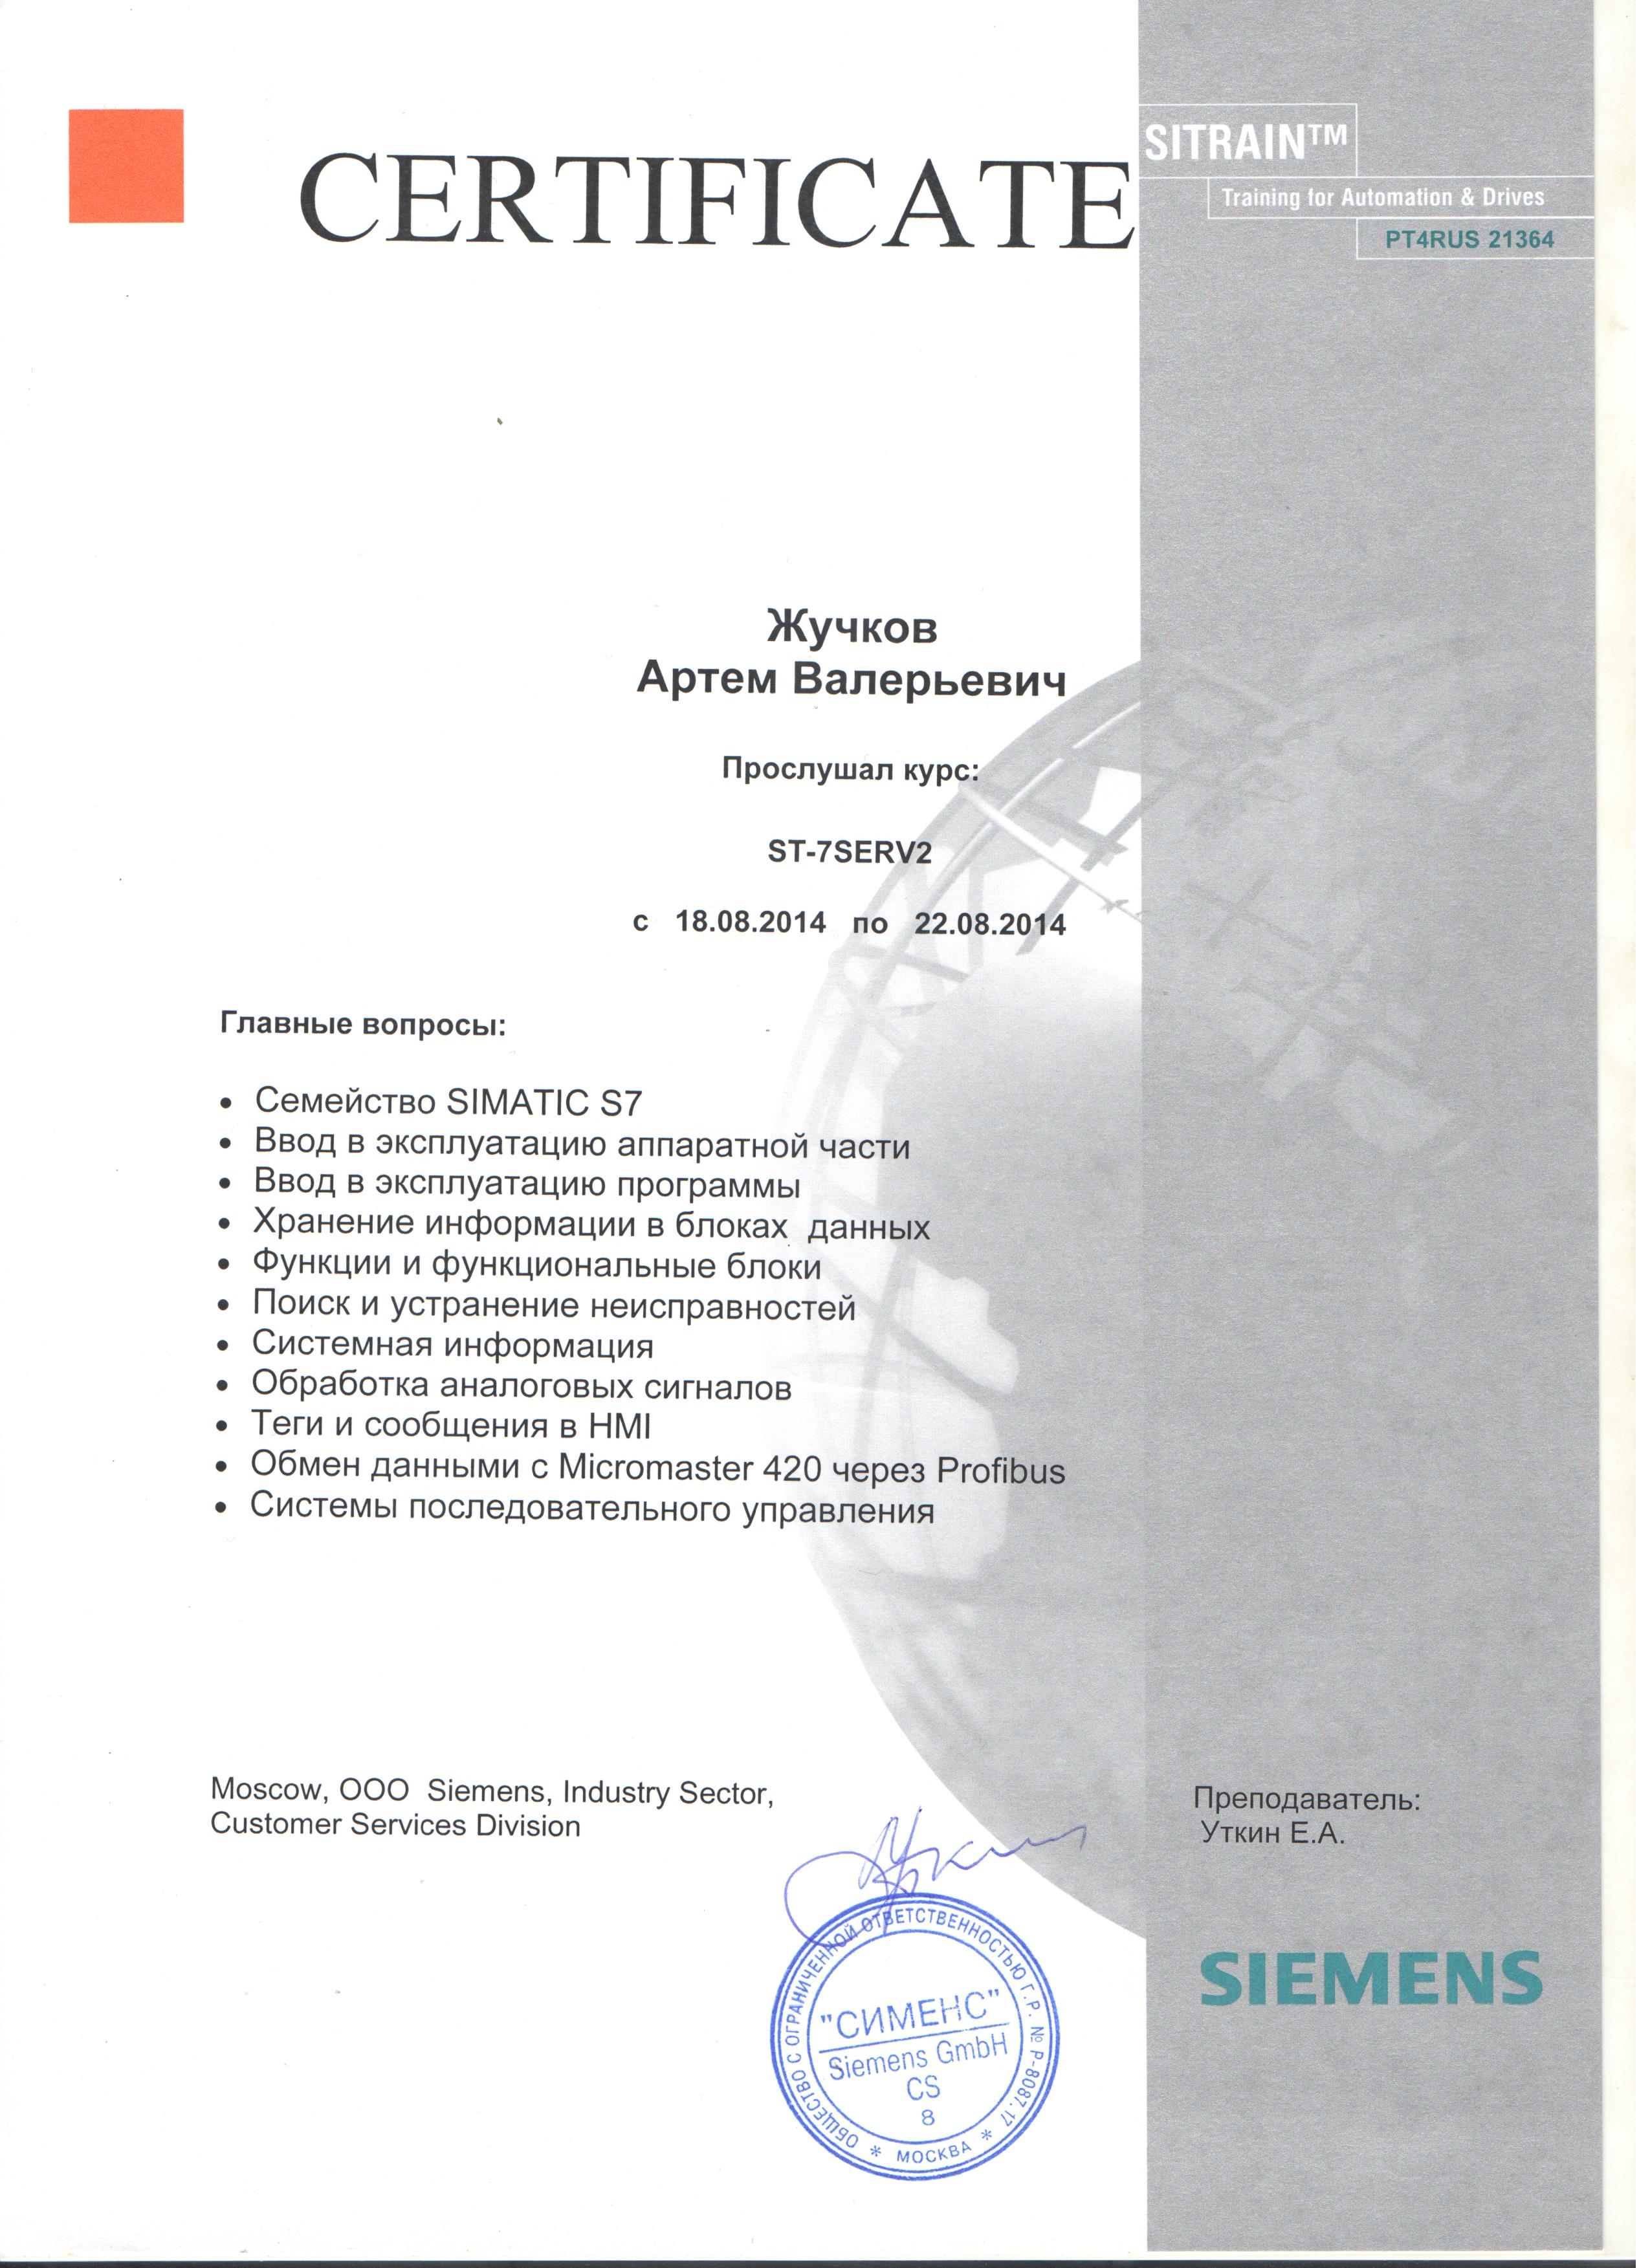 Сертификат о прохождении обучения Siemens: ST-7SERV2